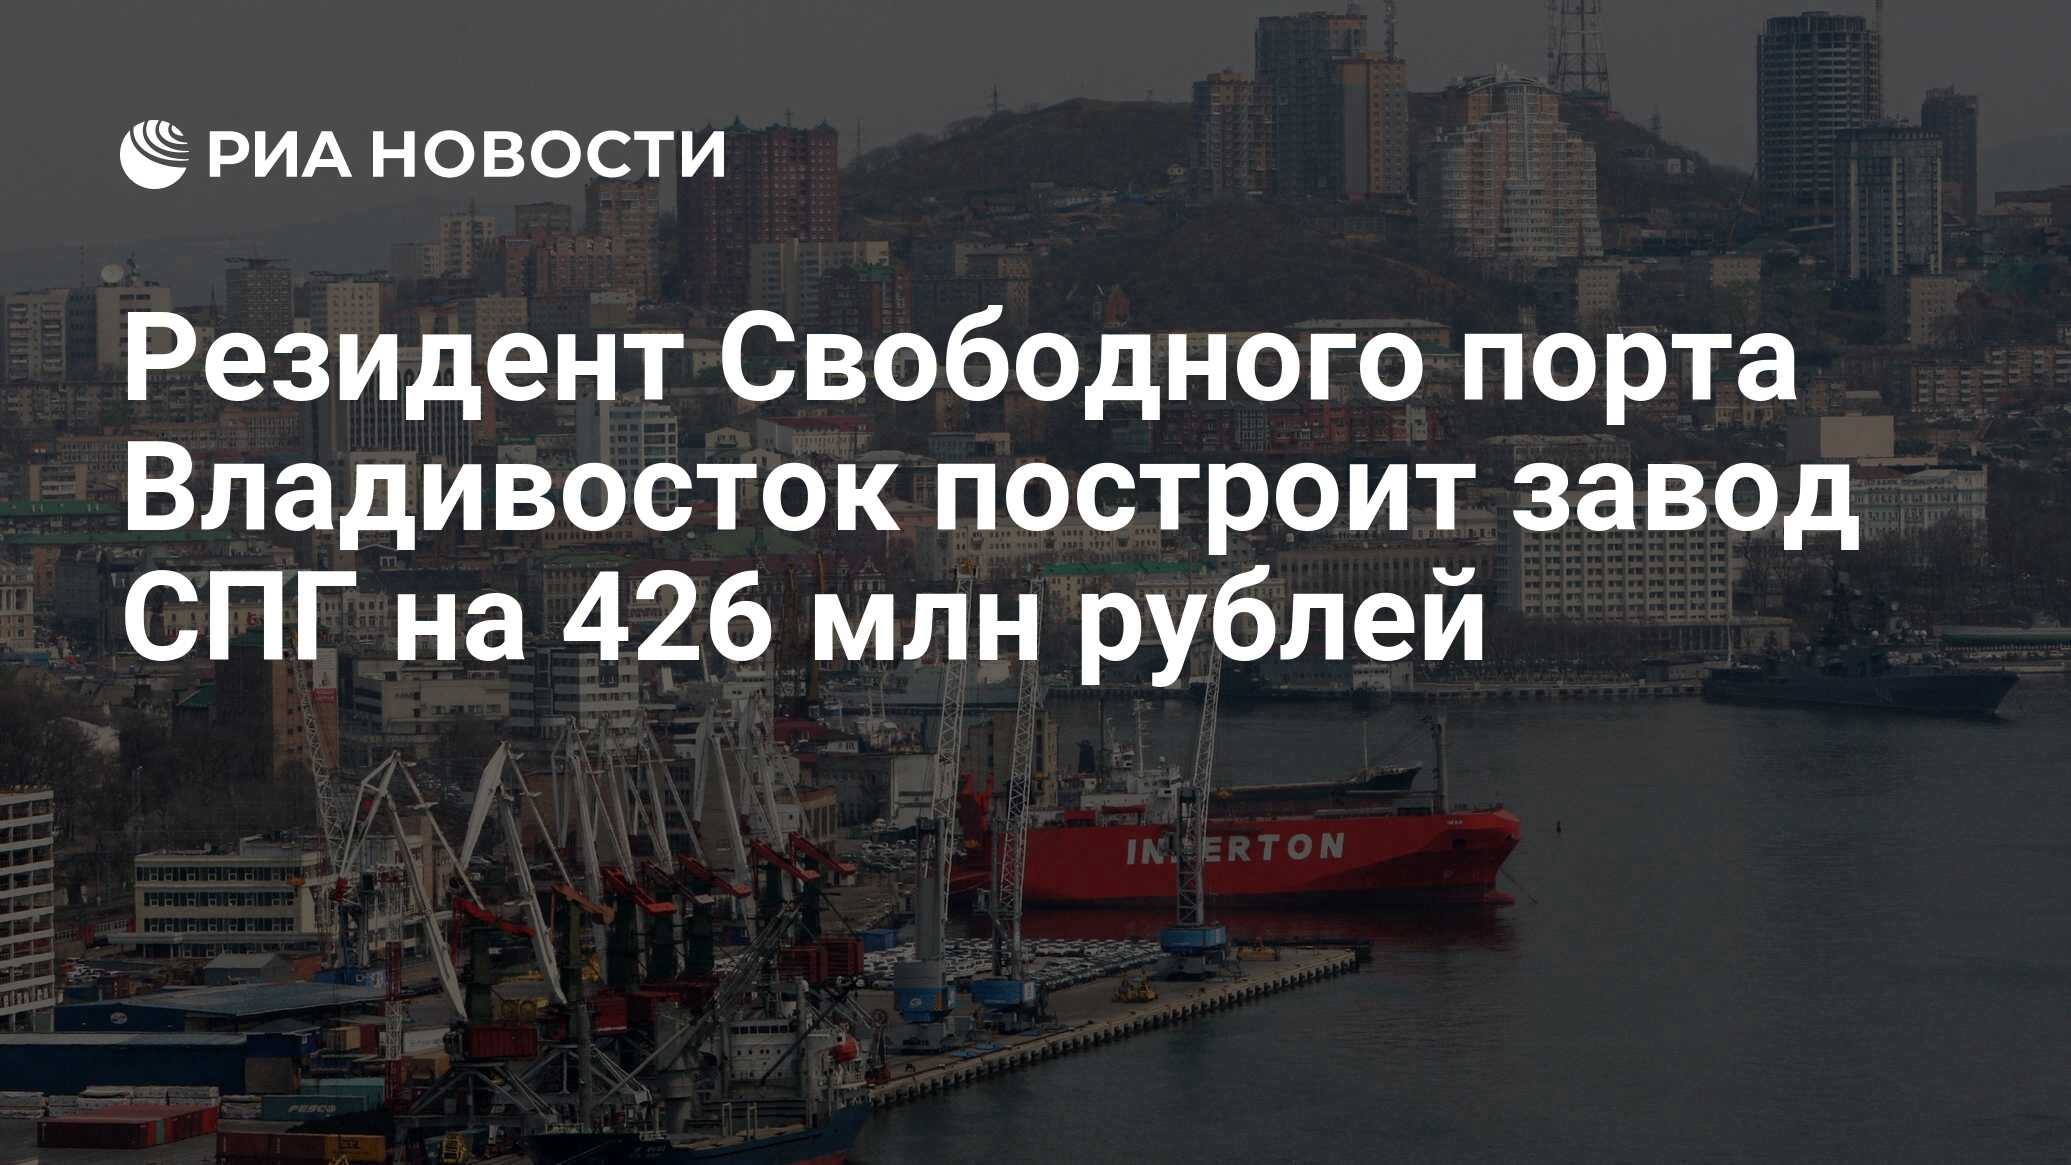 Свободный порт Владивосток. Экономика Владивостока. Свободный порт Владивосток в 2018. Резидент свободного порта владивосток